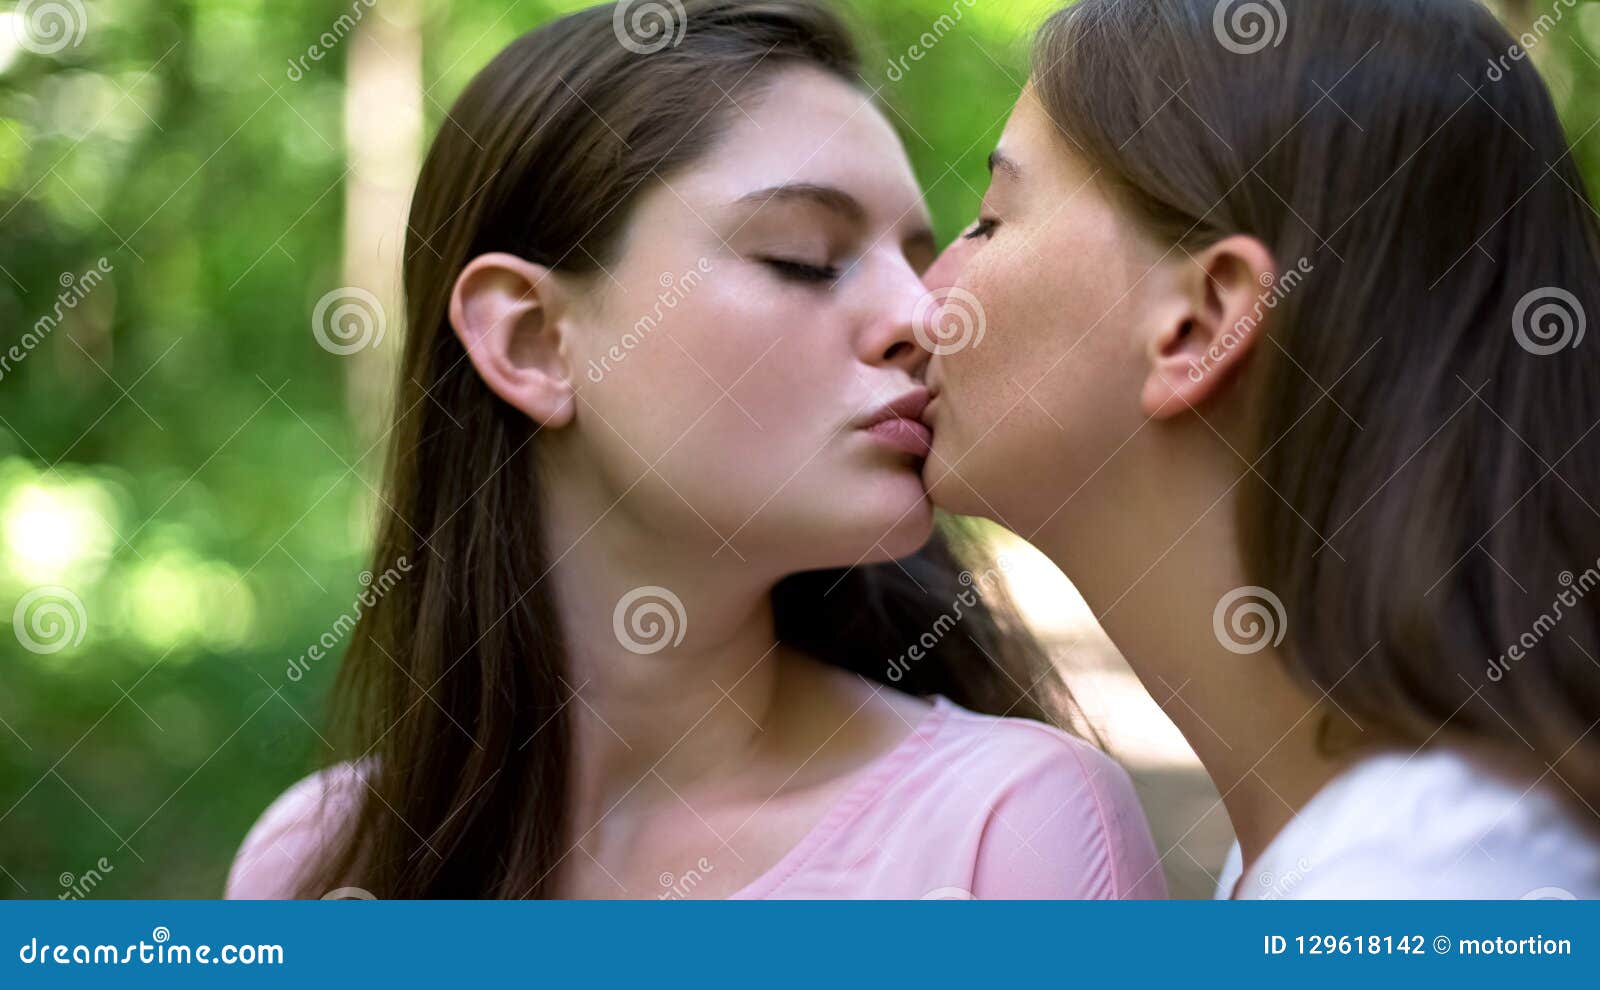 lesbians full kiss lesbians